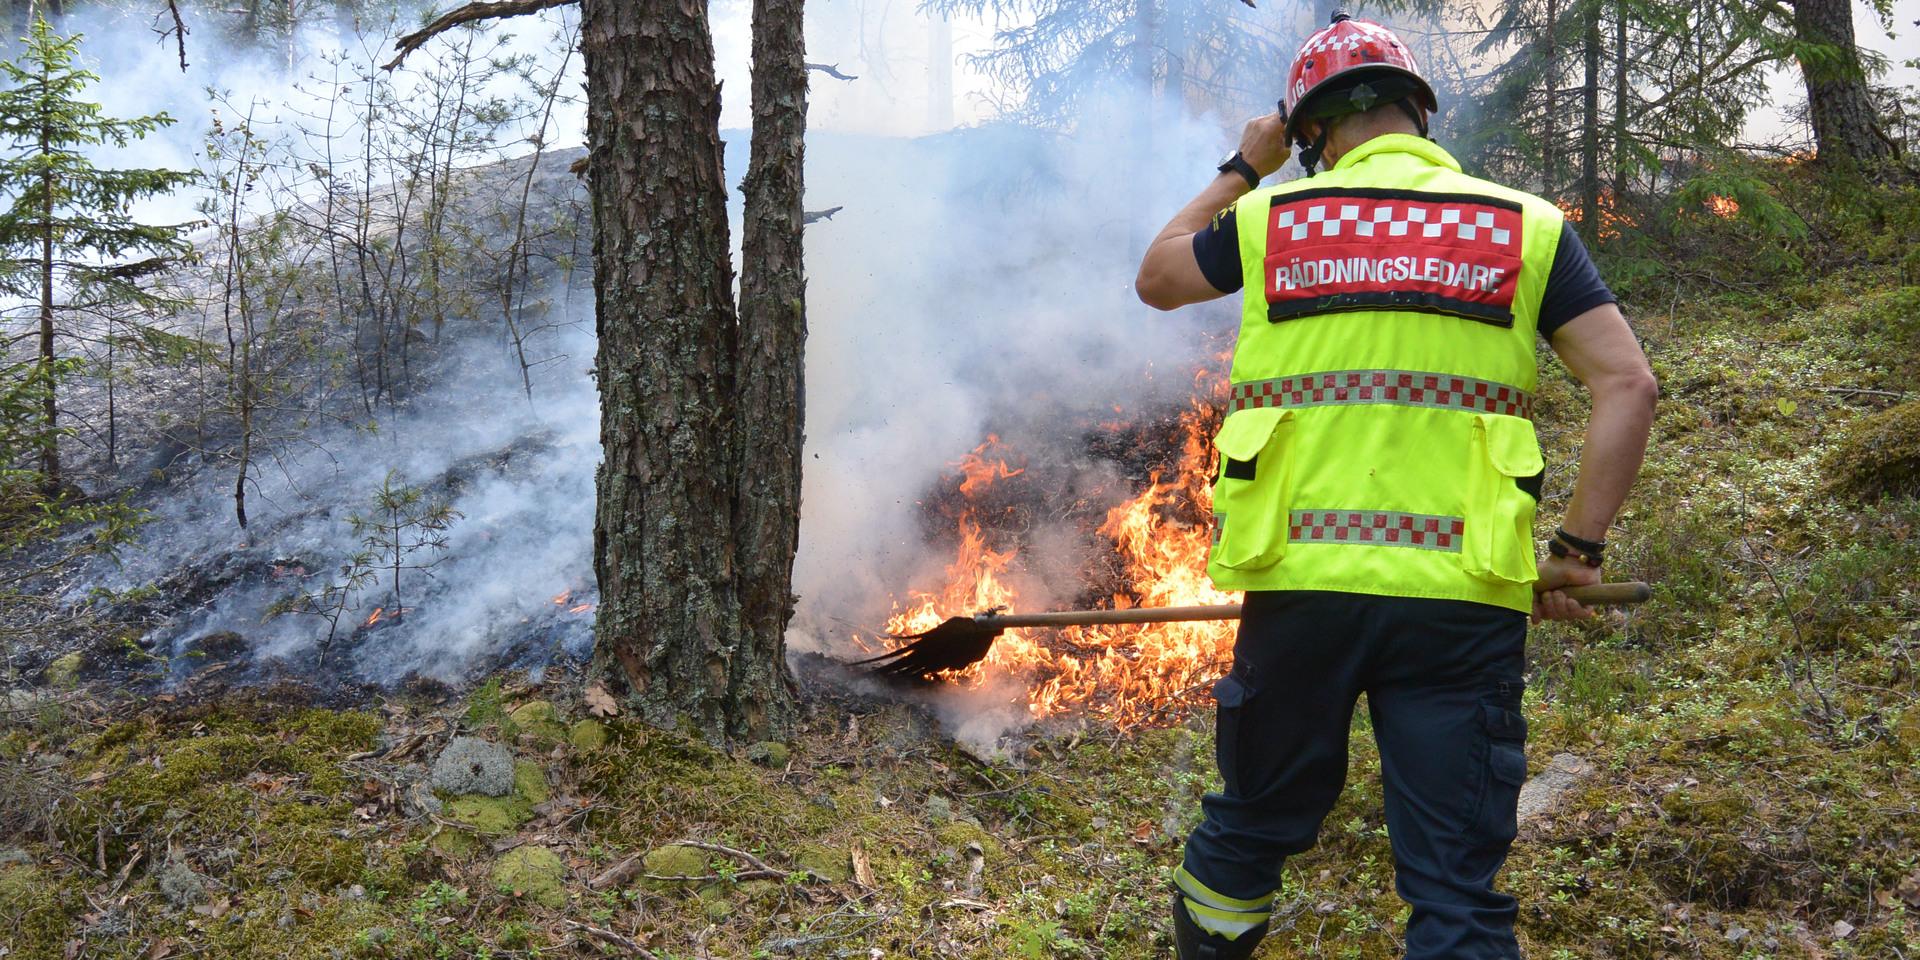 Det torra fjolårsgräset gör att risken för terrängbränder ökar i regionen. Det finns flera saker man kan tänka på för att elda mer säkert.